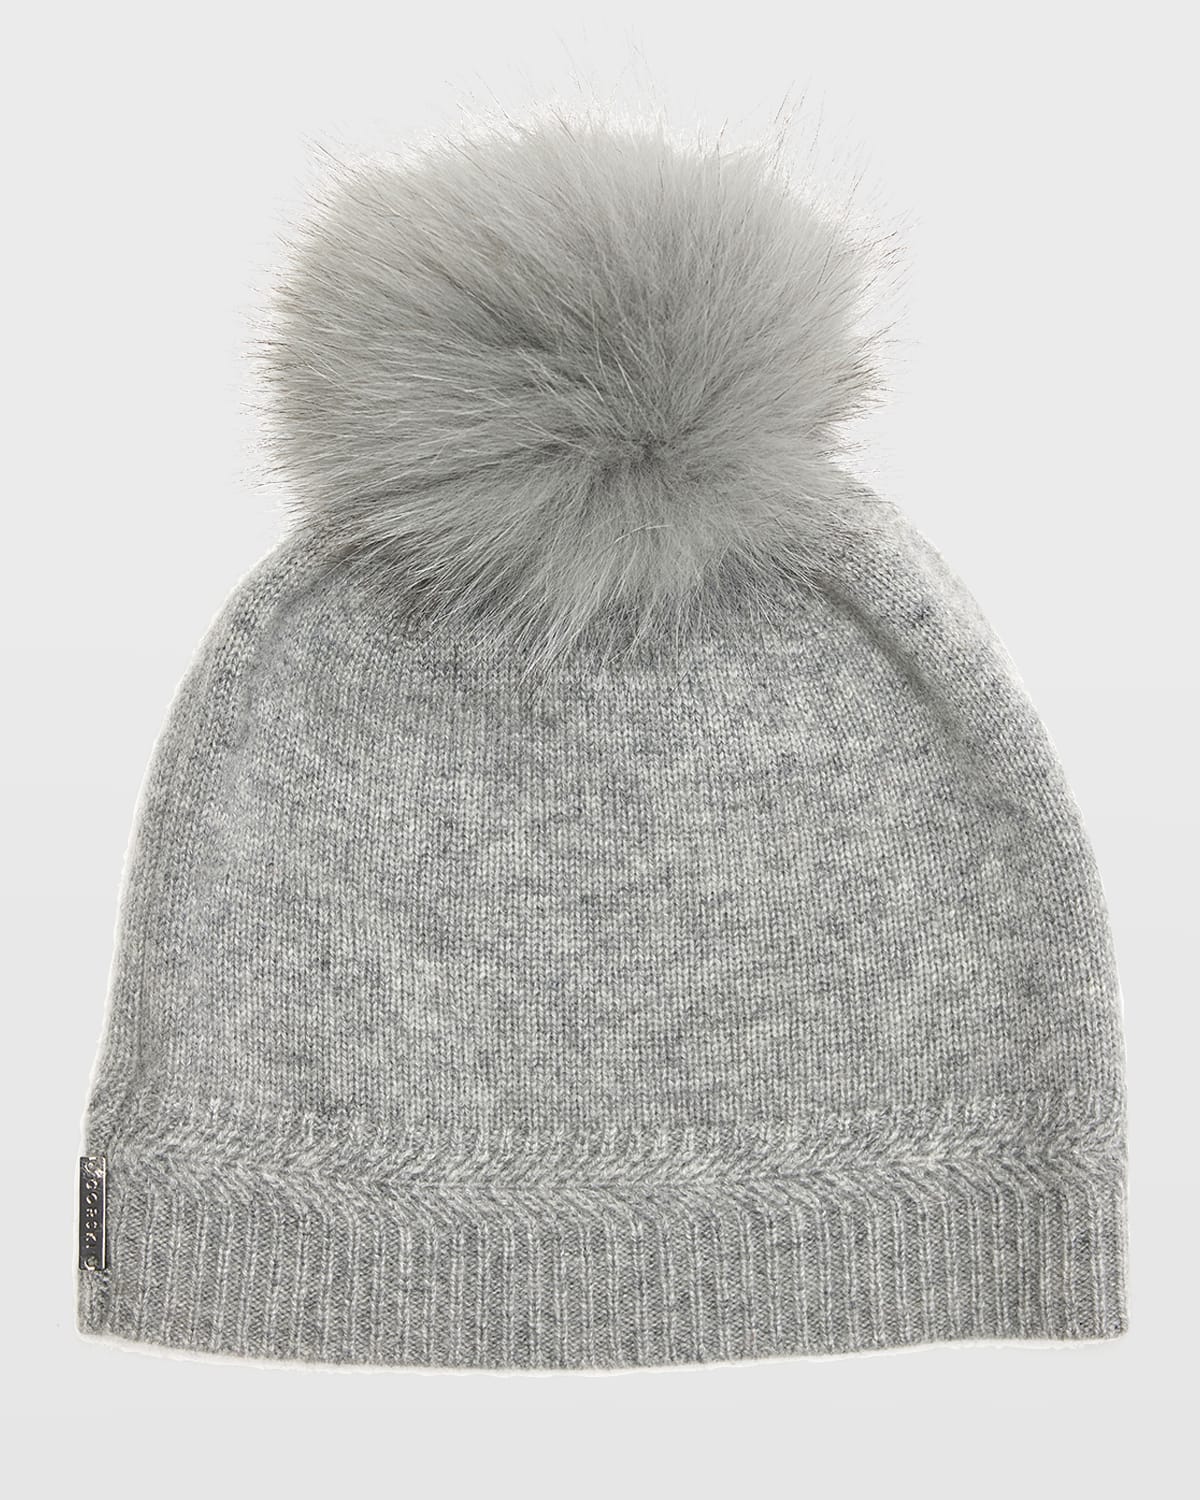 Gorski Knit Cashmere Beanie Hat W/ Fur Pompom In Light Gray